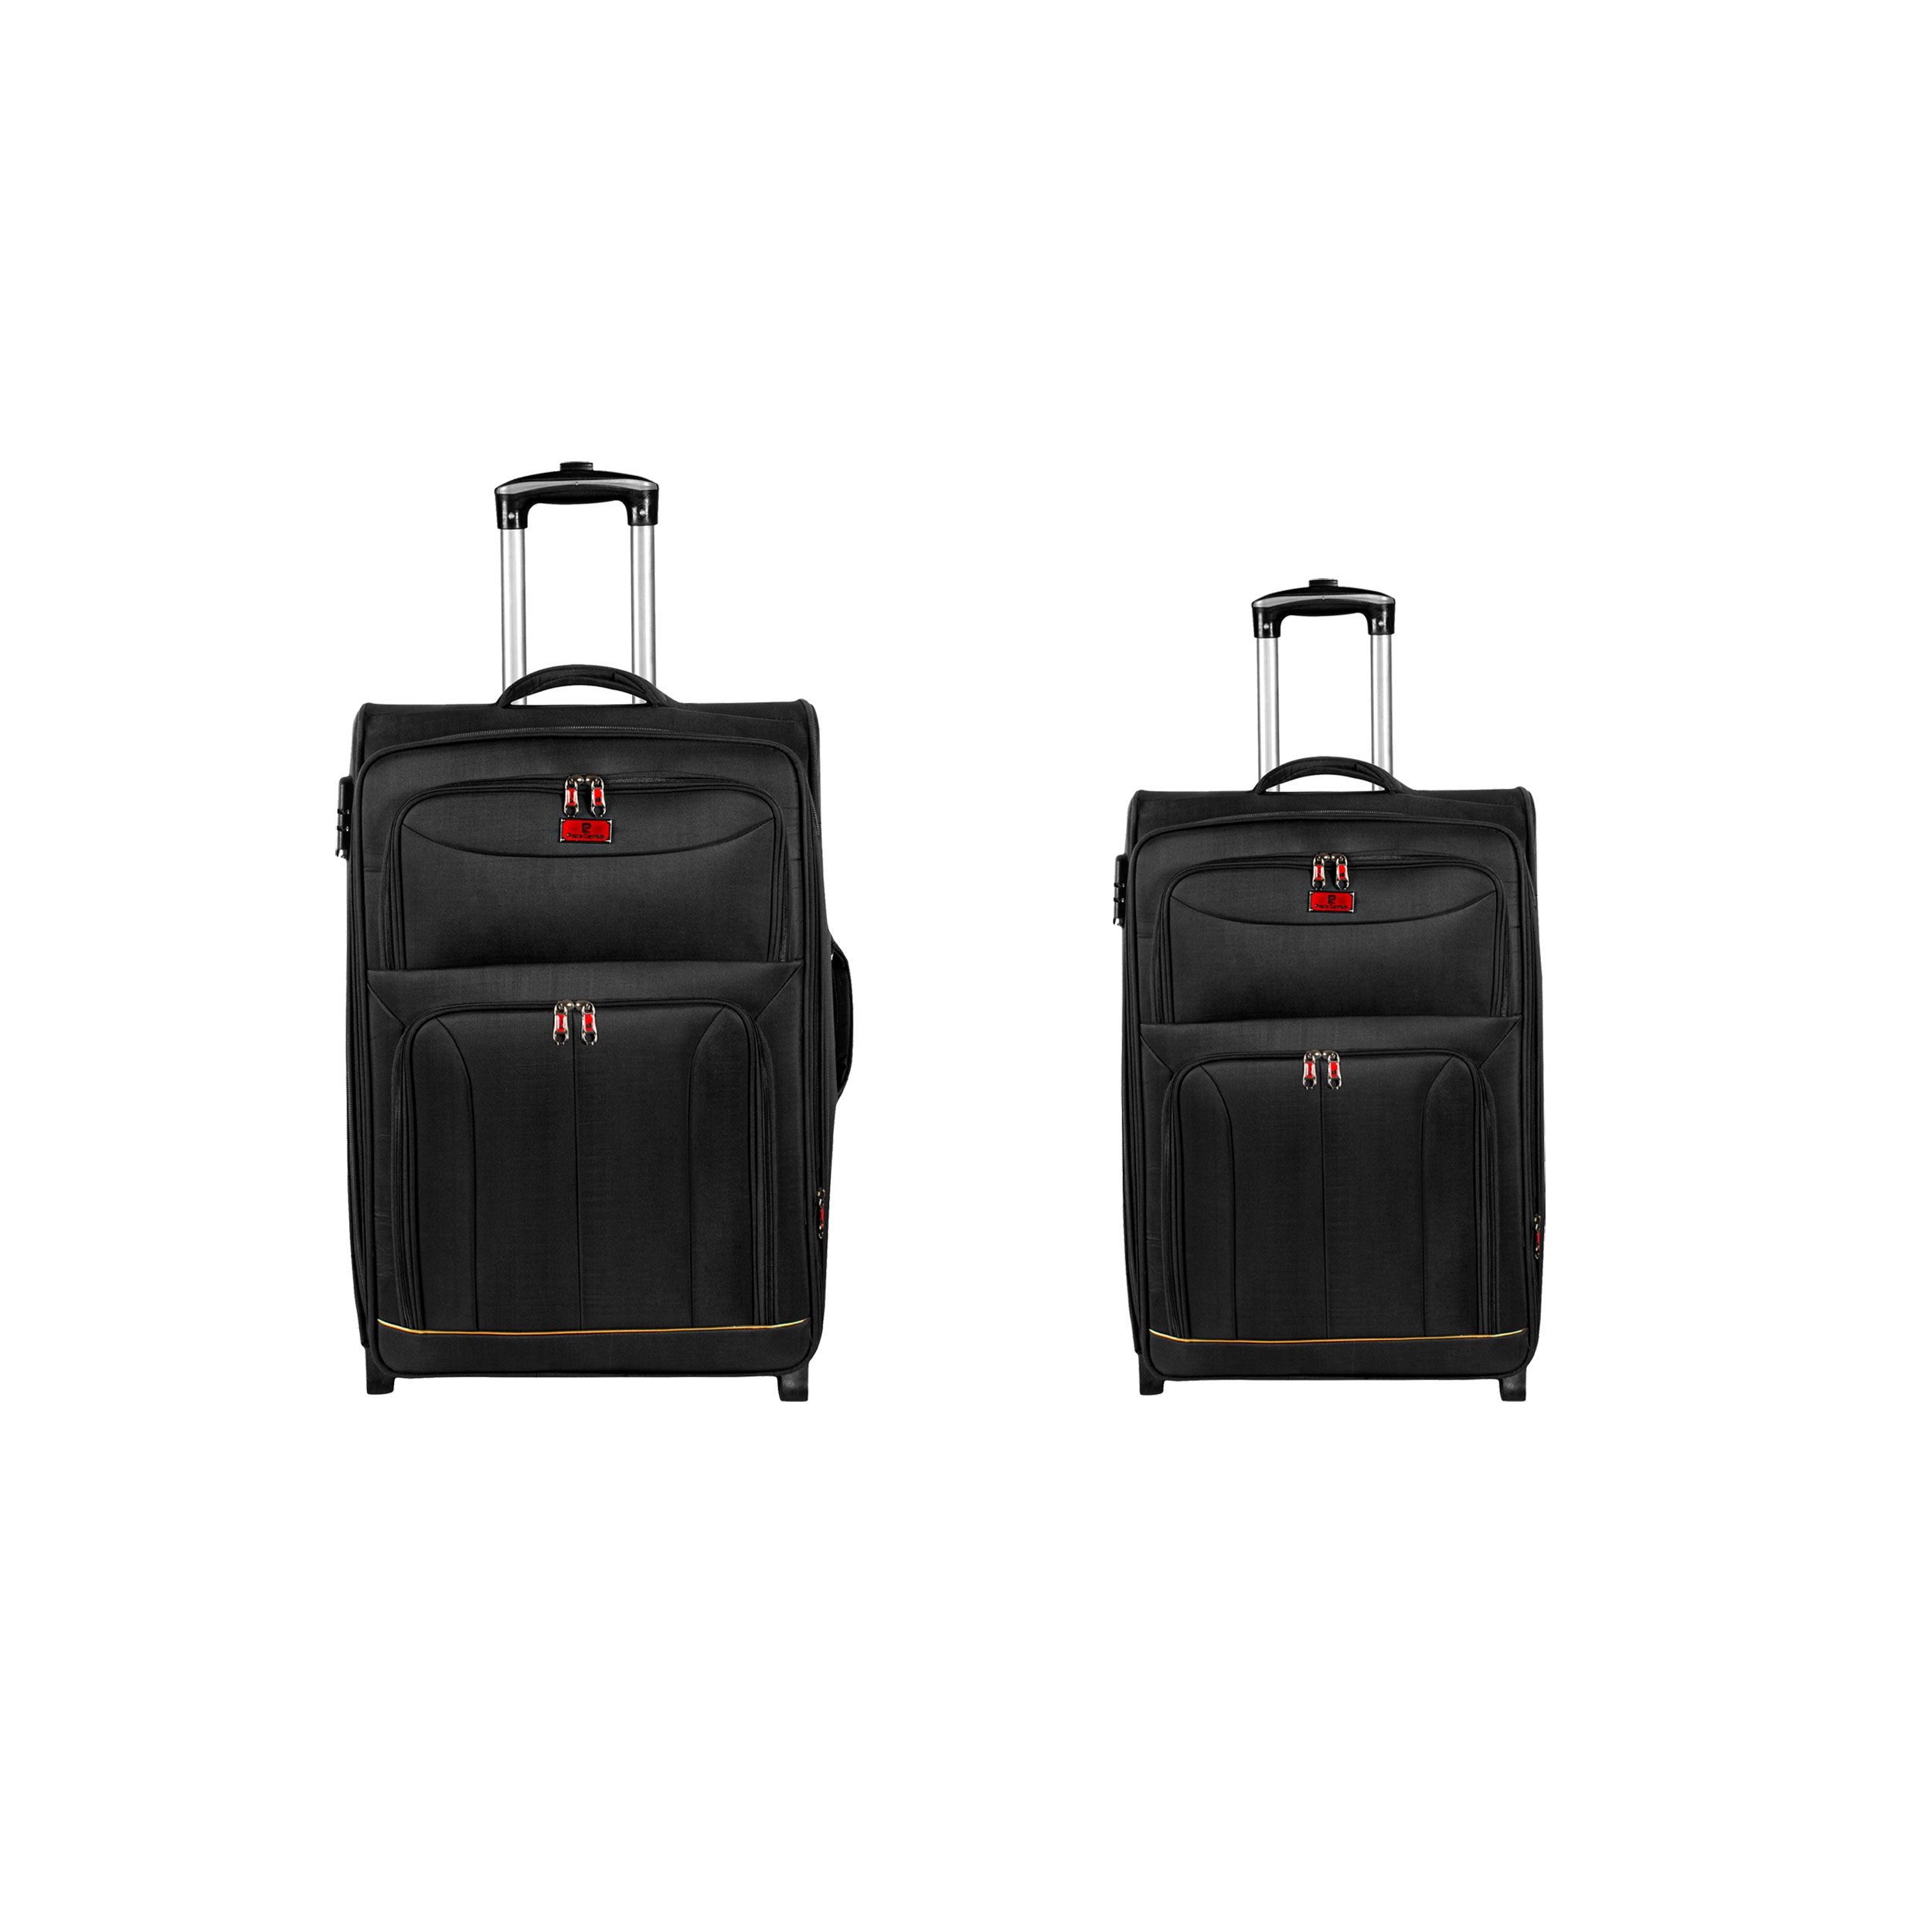  مجموعه دو عددی چمدان پیر کاردین مدل DY-5050M کد M-K